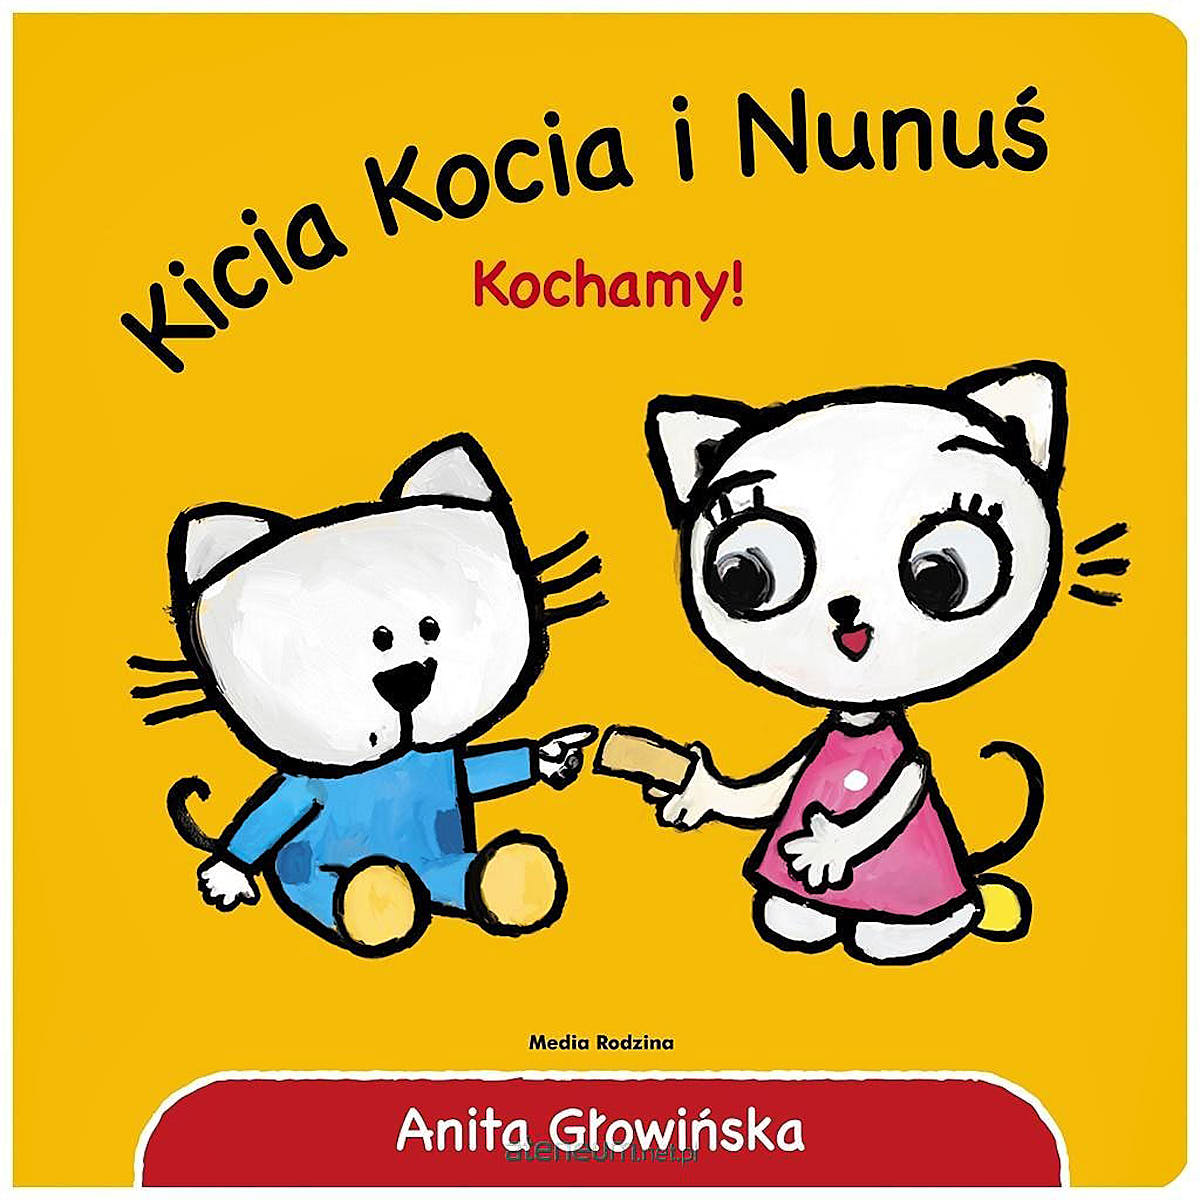 Kicia Kocia i Nunuś. Kochamy - Wydawnictwo Media Rodzina